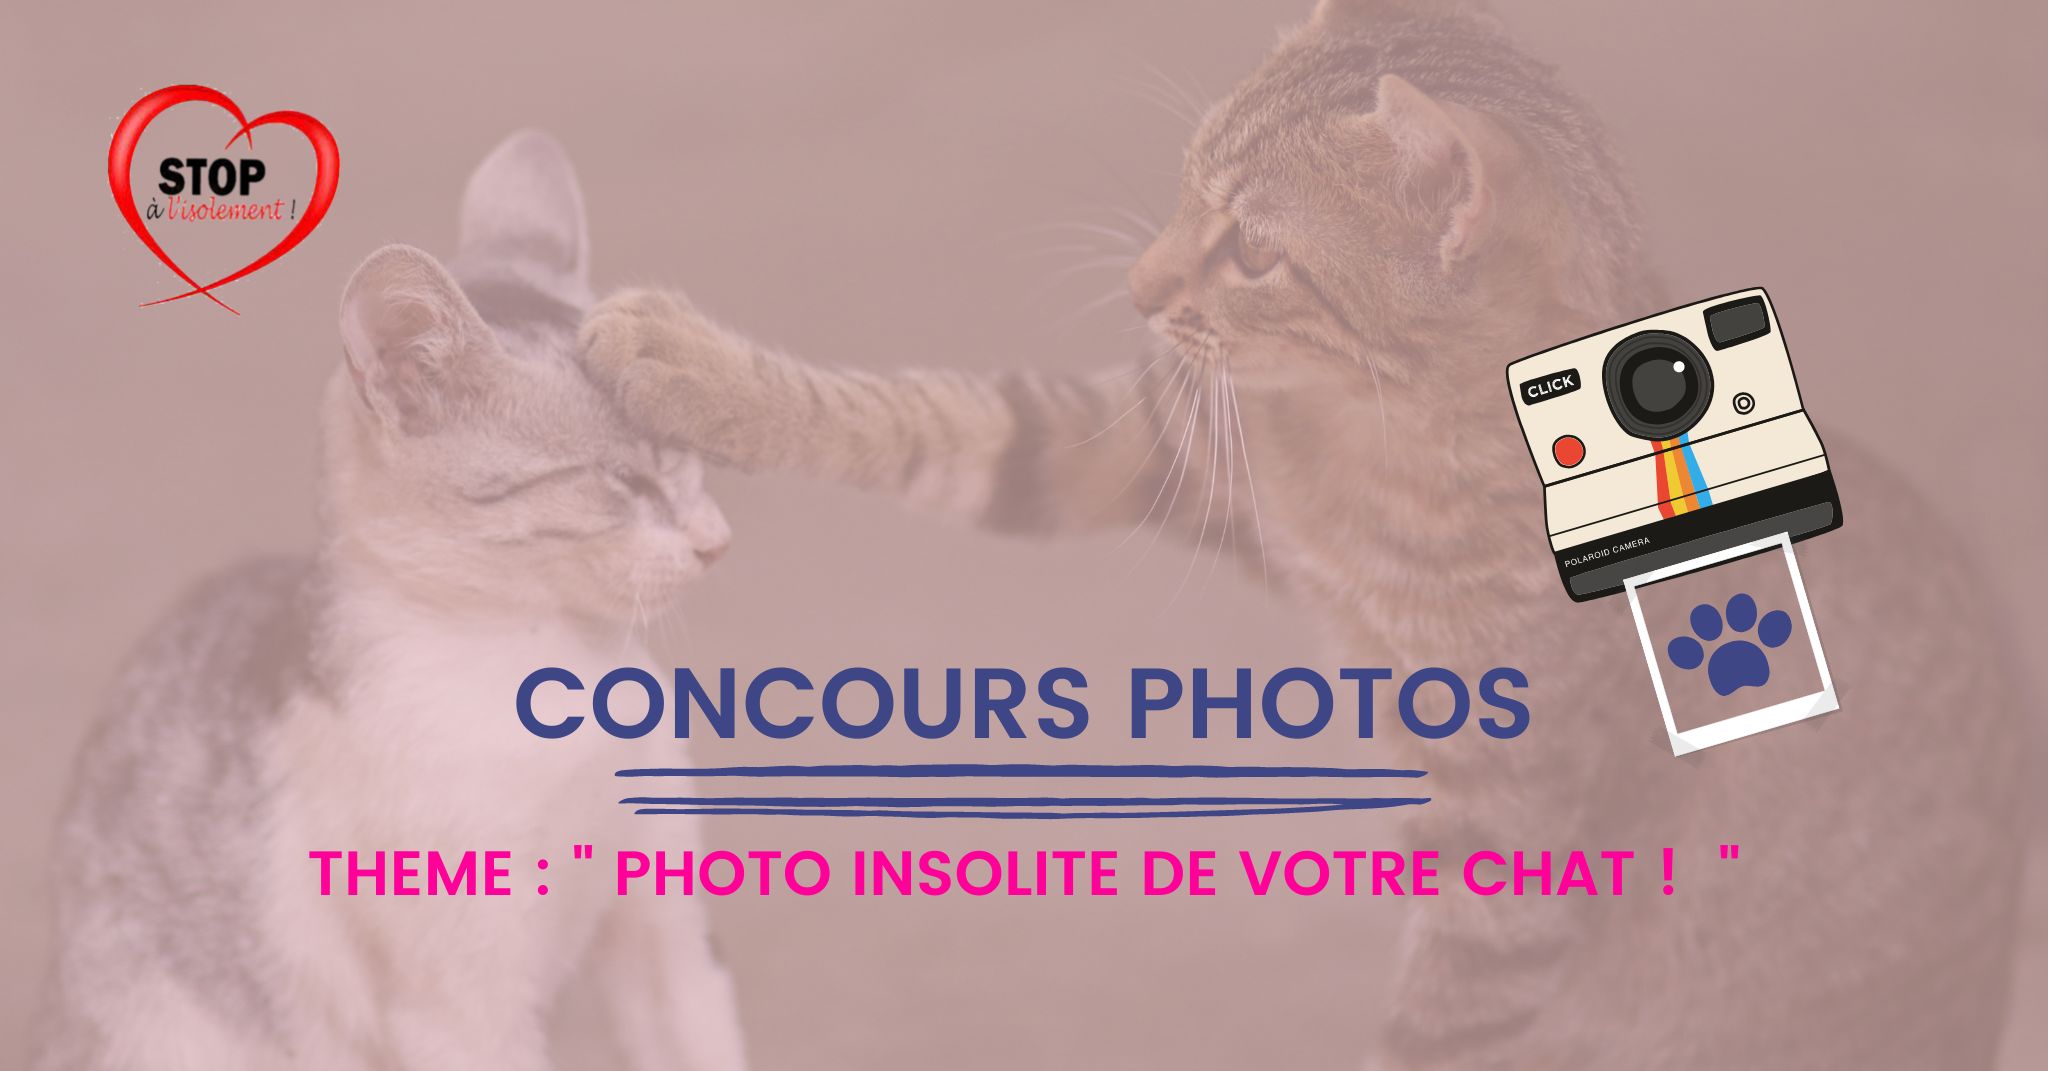 image : 📸 🐈  CONCOURS PHOTOS  📸 😺 - PHOTO INSOLITE DE VOTRE CHAT 😺 ! 